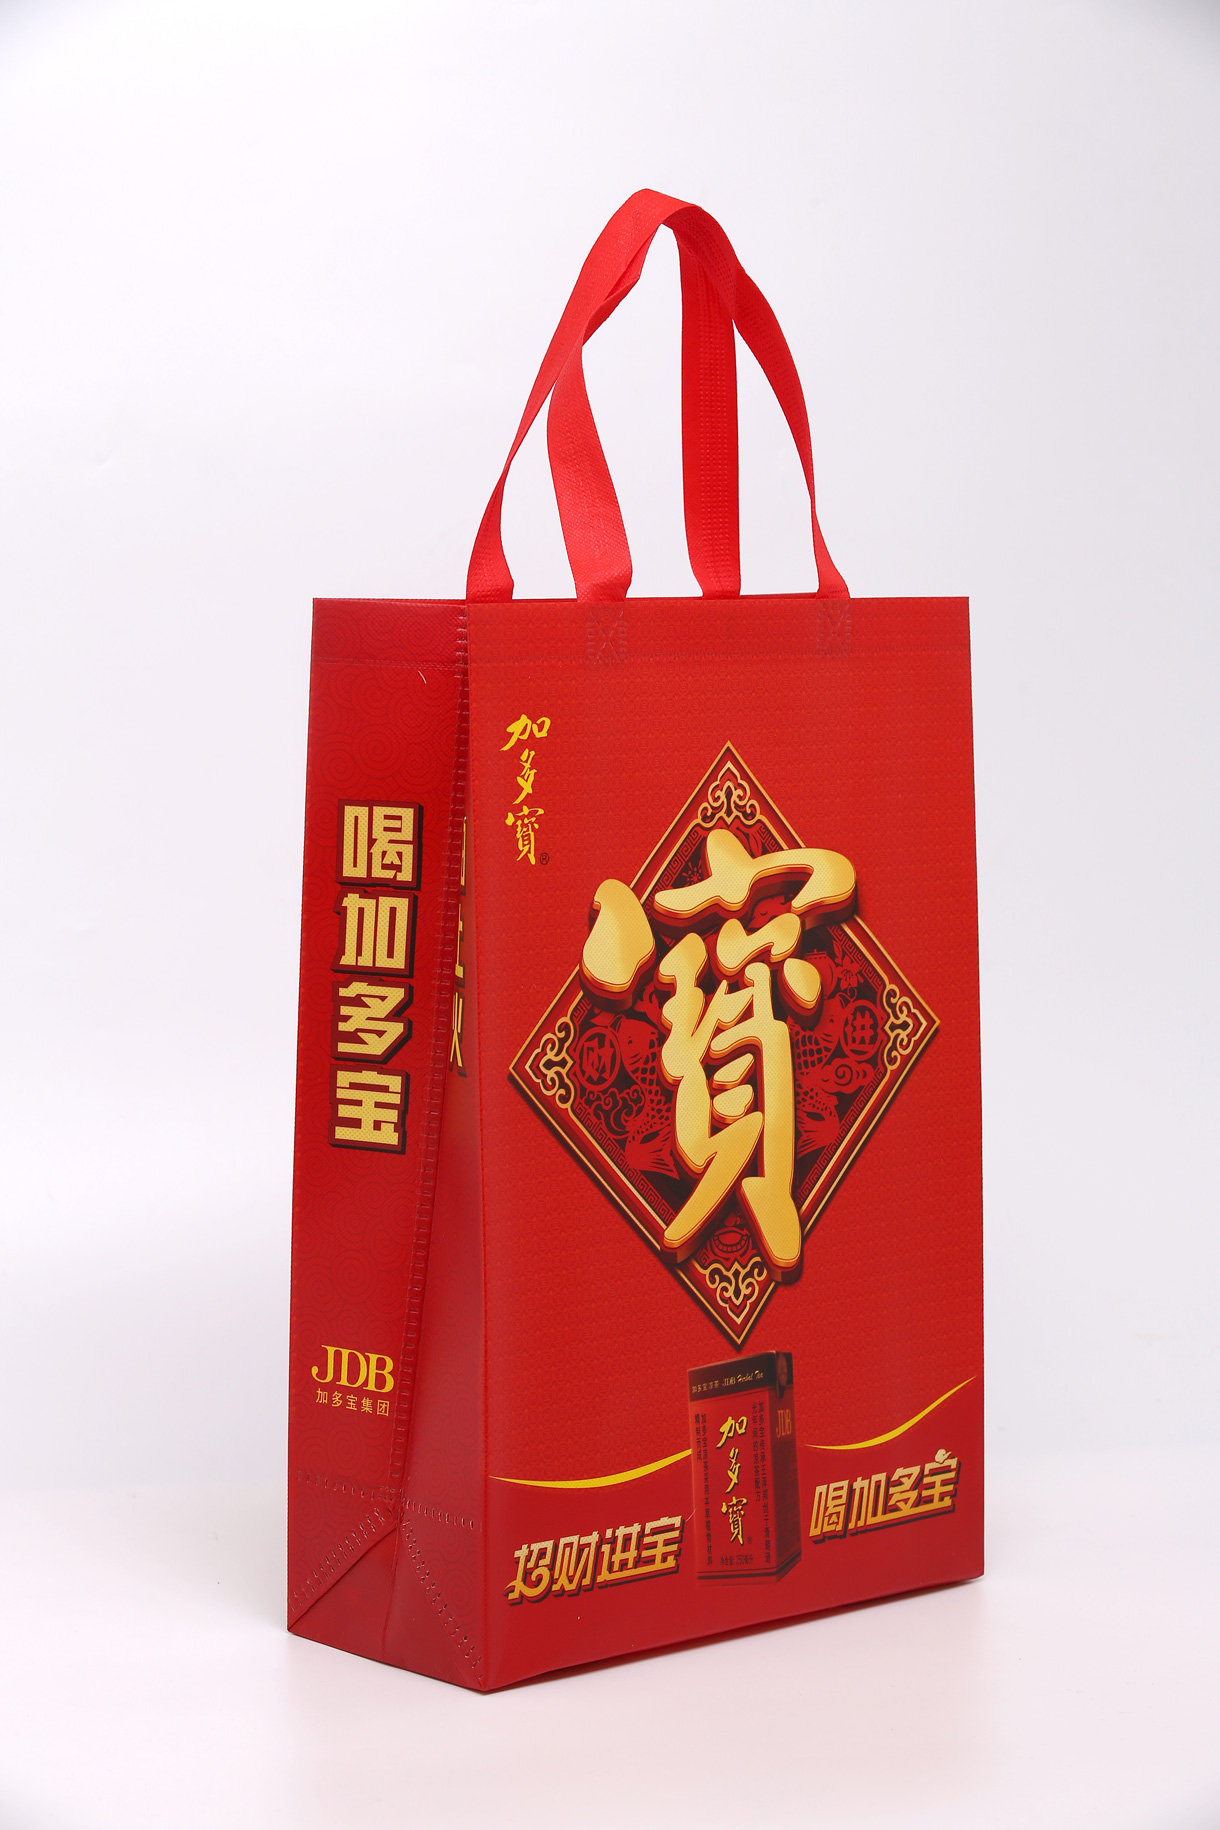 浙江中宇节能科技有限公司将亮相CIPPME上海国际包装展